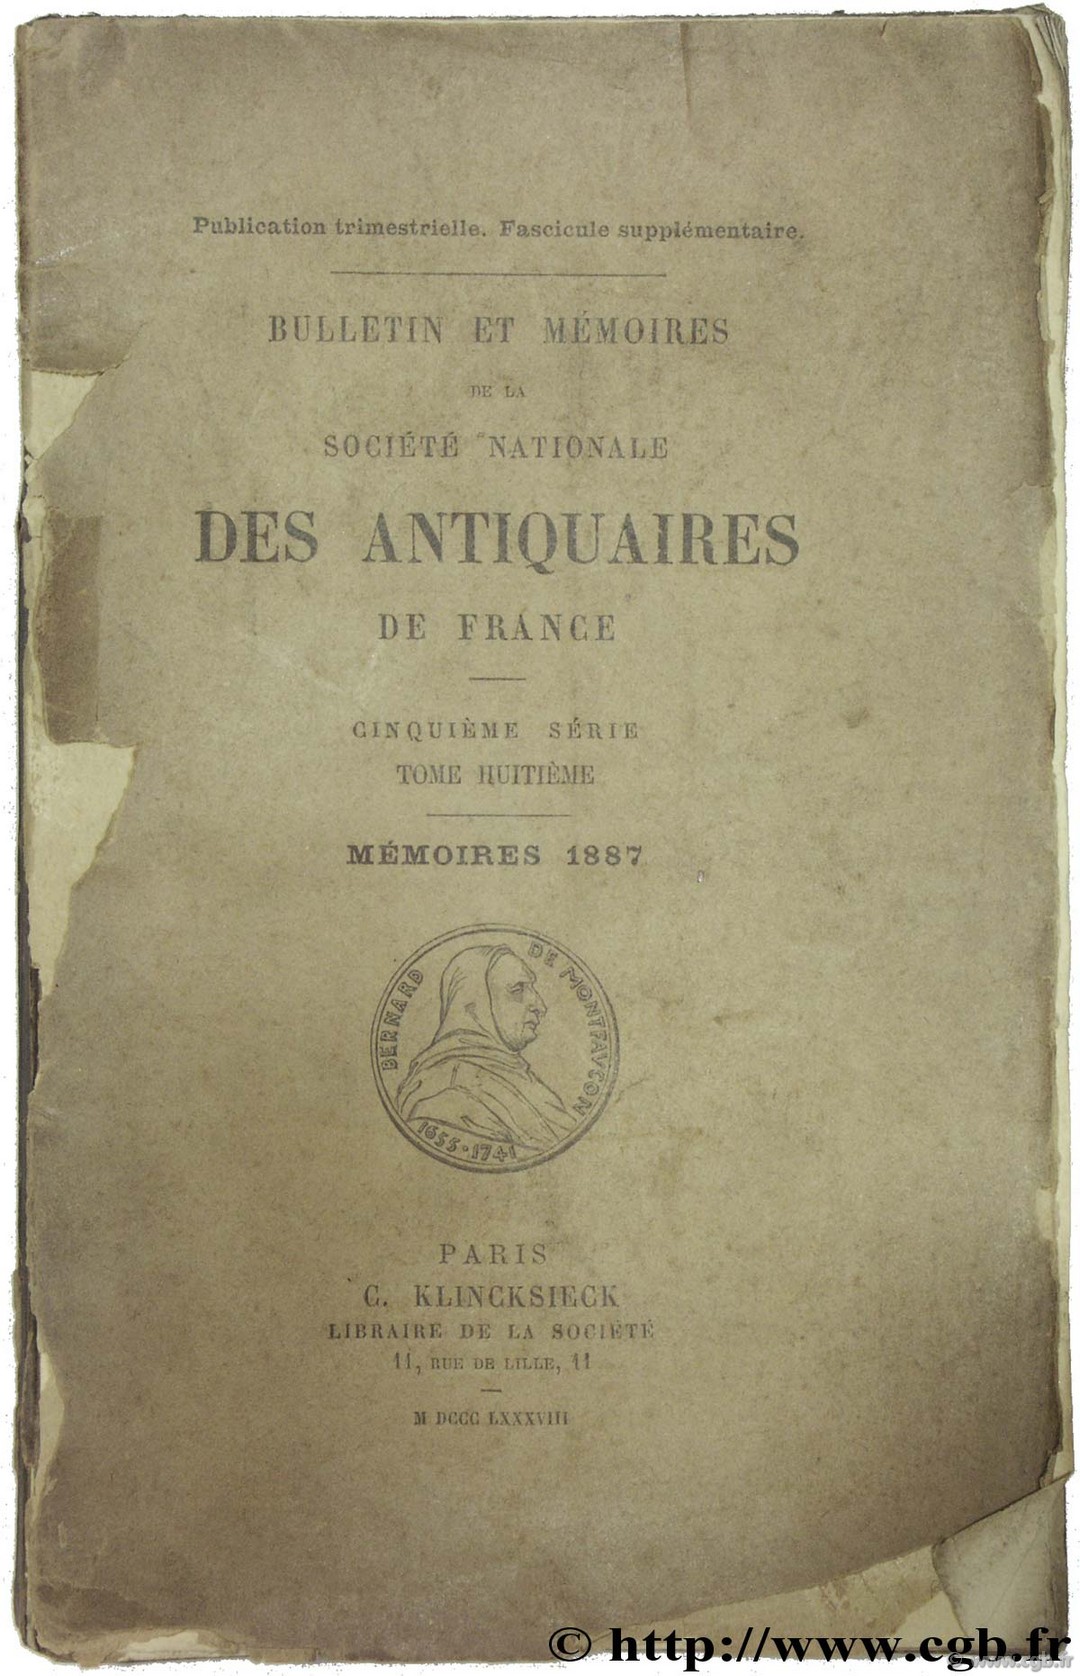 Bulletin et Mémoires de la société nationale des antiquaires de France  